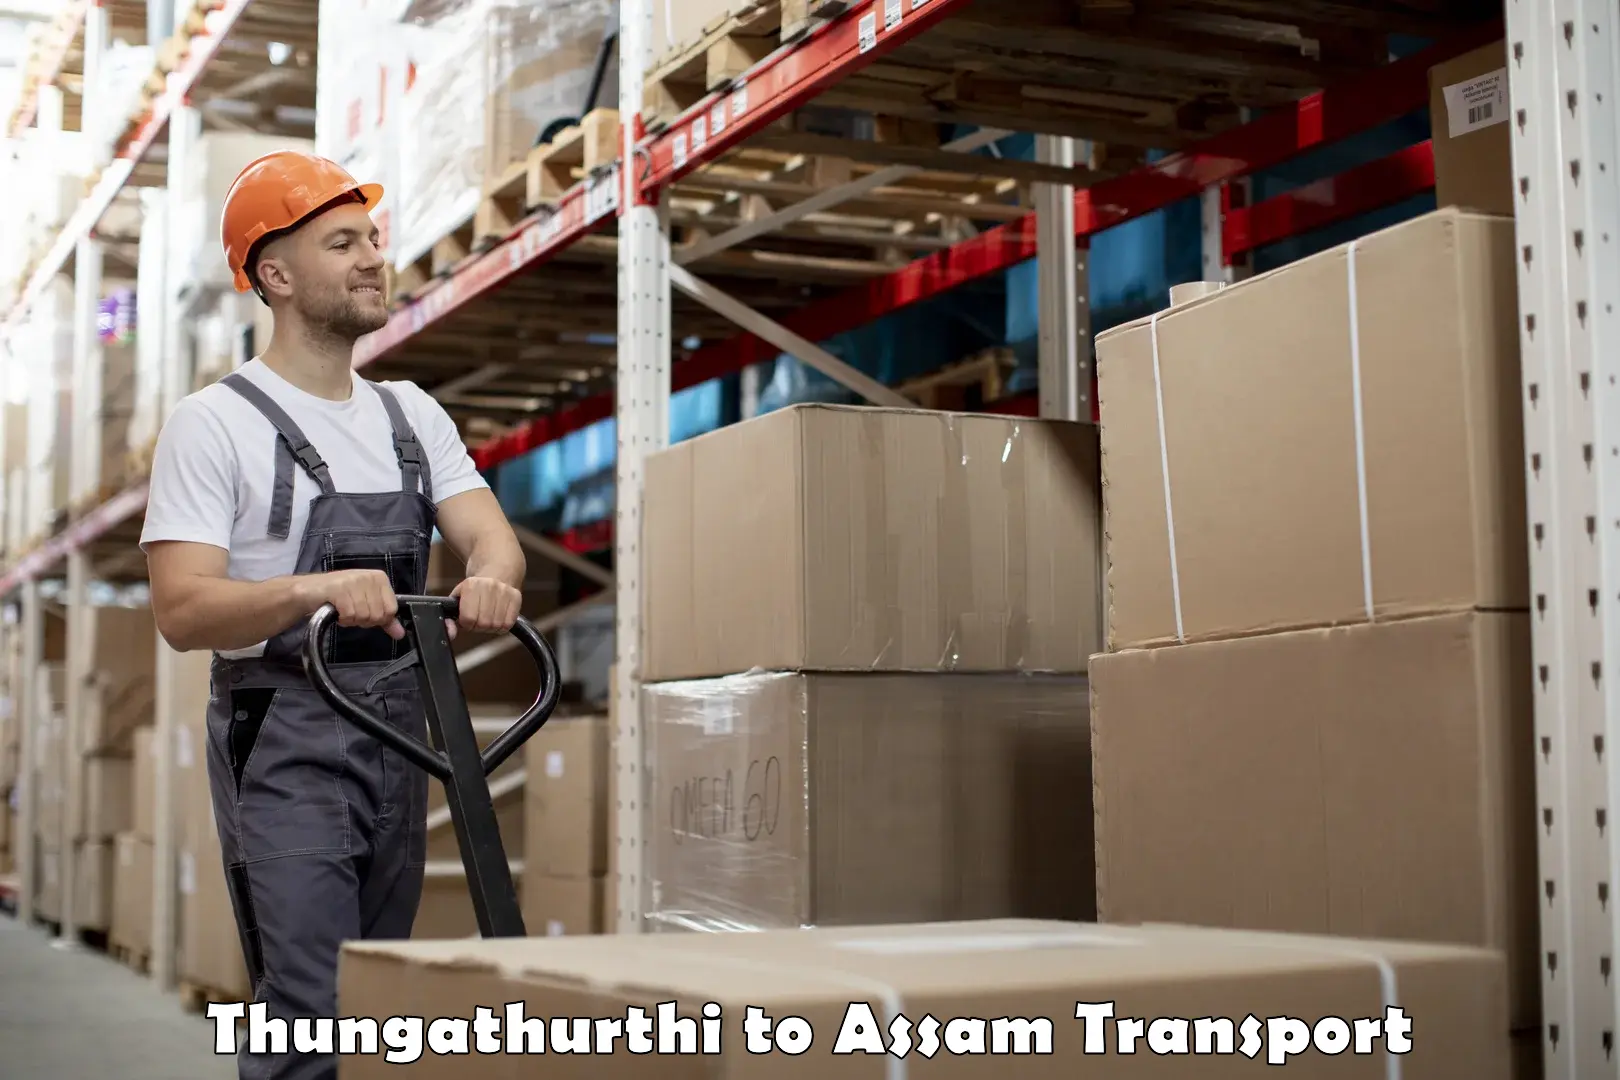 Pick up transport service Thungathurthi to Bhergaon